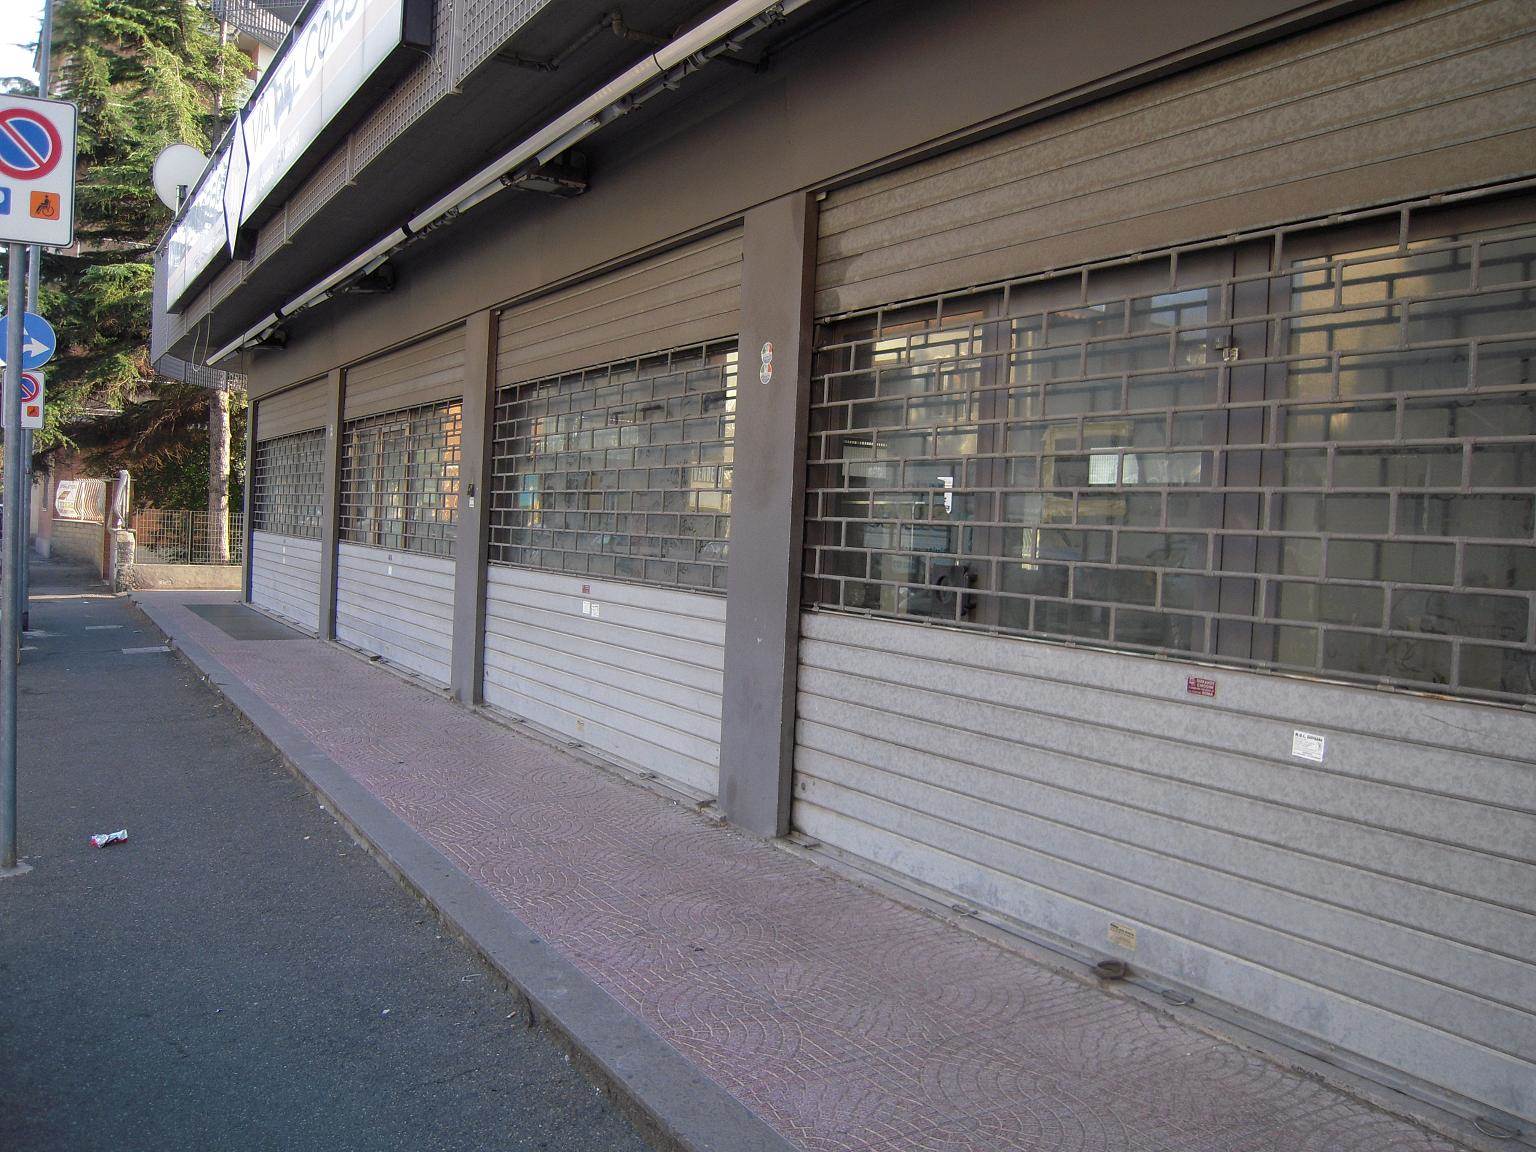 L'immobiliare Bertini propone uno splendido locale Commerciale con sei vetrine su strada principale . Il localeviene proposto sia in locazione che in 